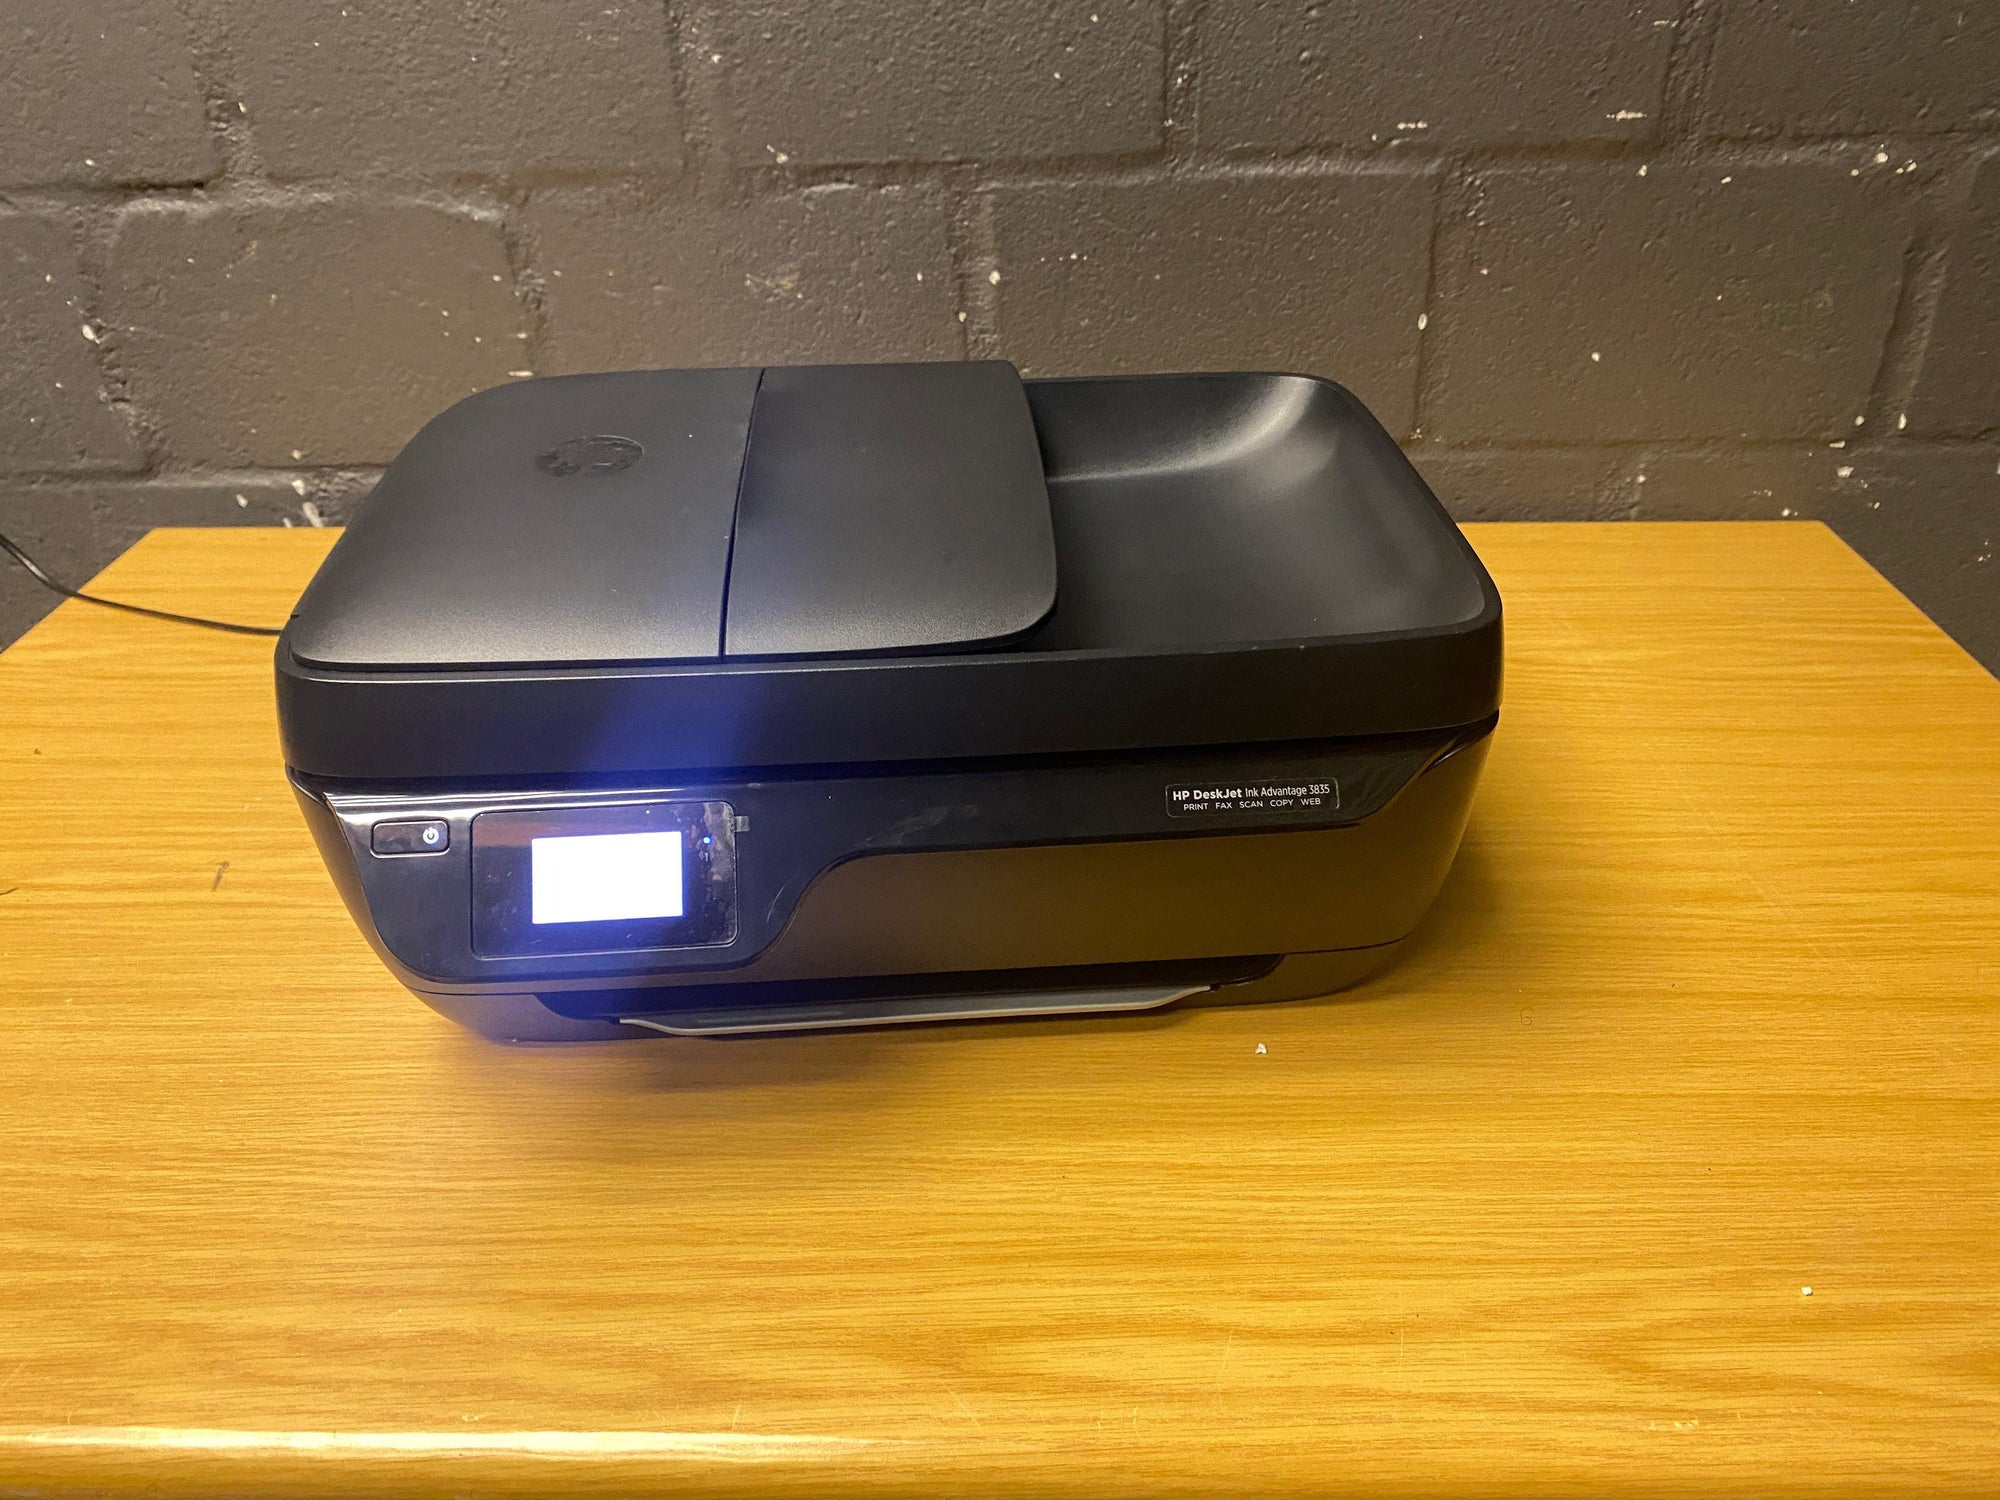 HP Deskjet Ink Advantage 3835 Printer -REDUCED